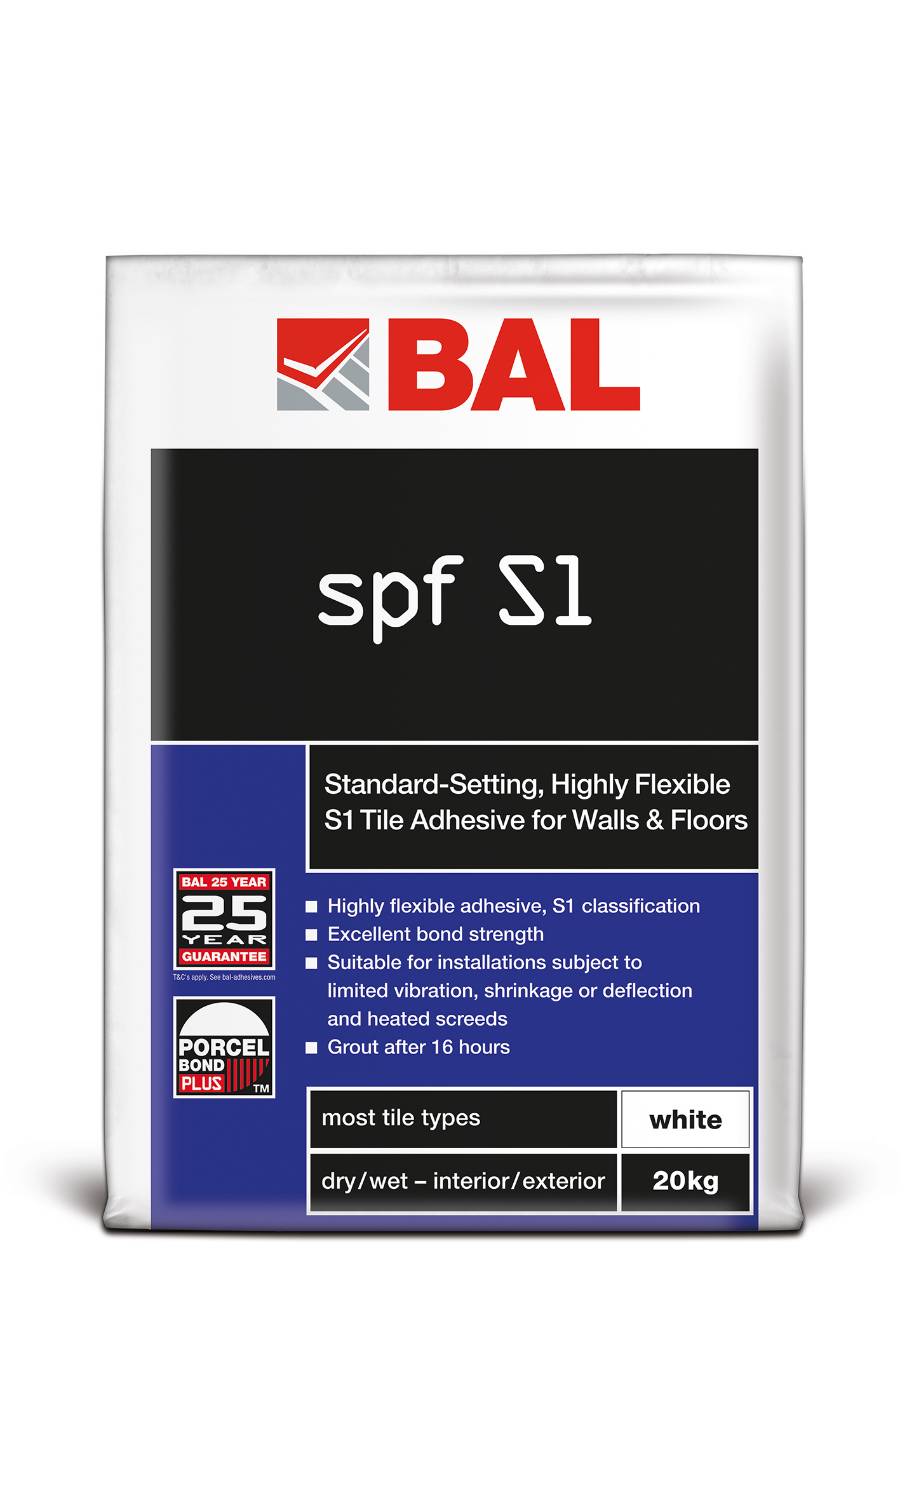 BAL SPF S1 - Tile Adhesive